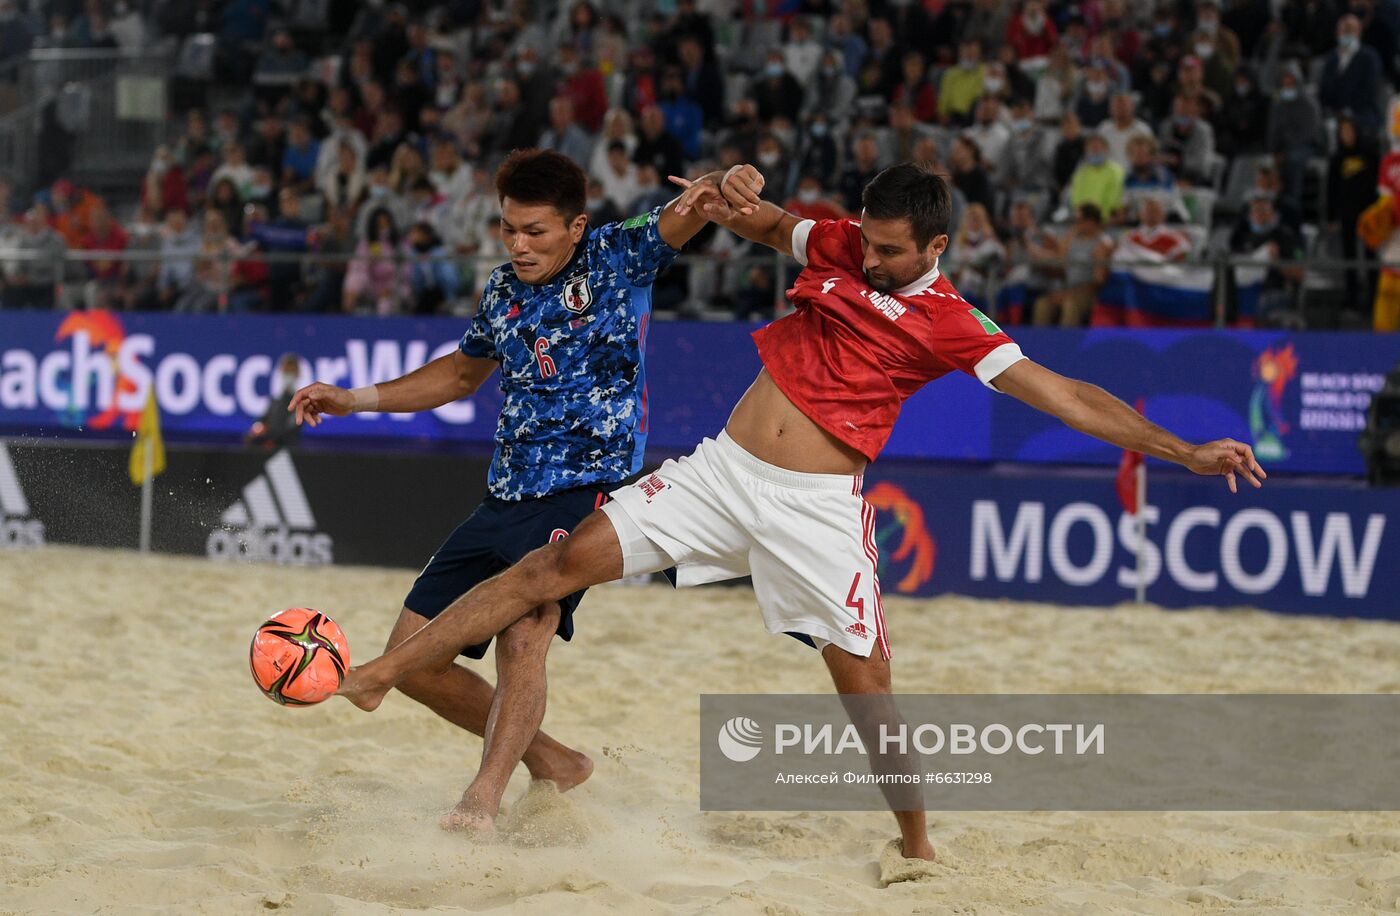 Пляжный футбол. ЧМ-2021. Матч Япония - Россия